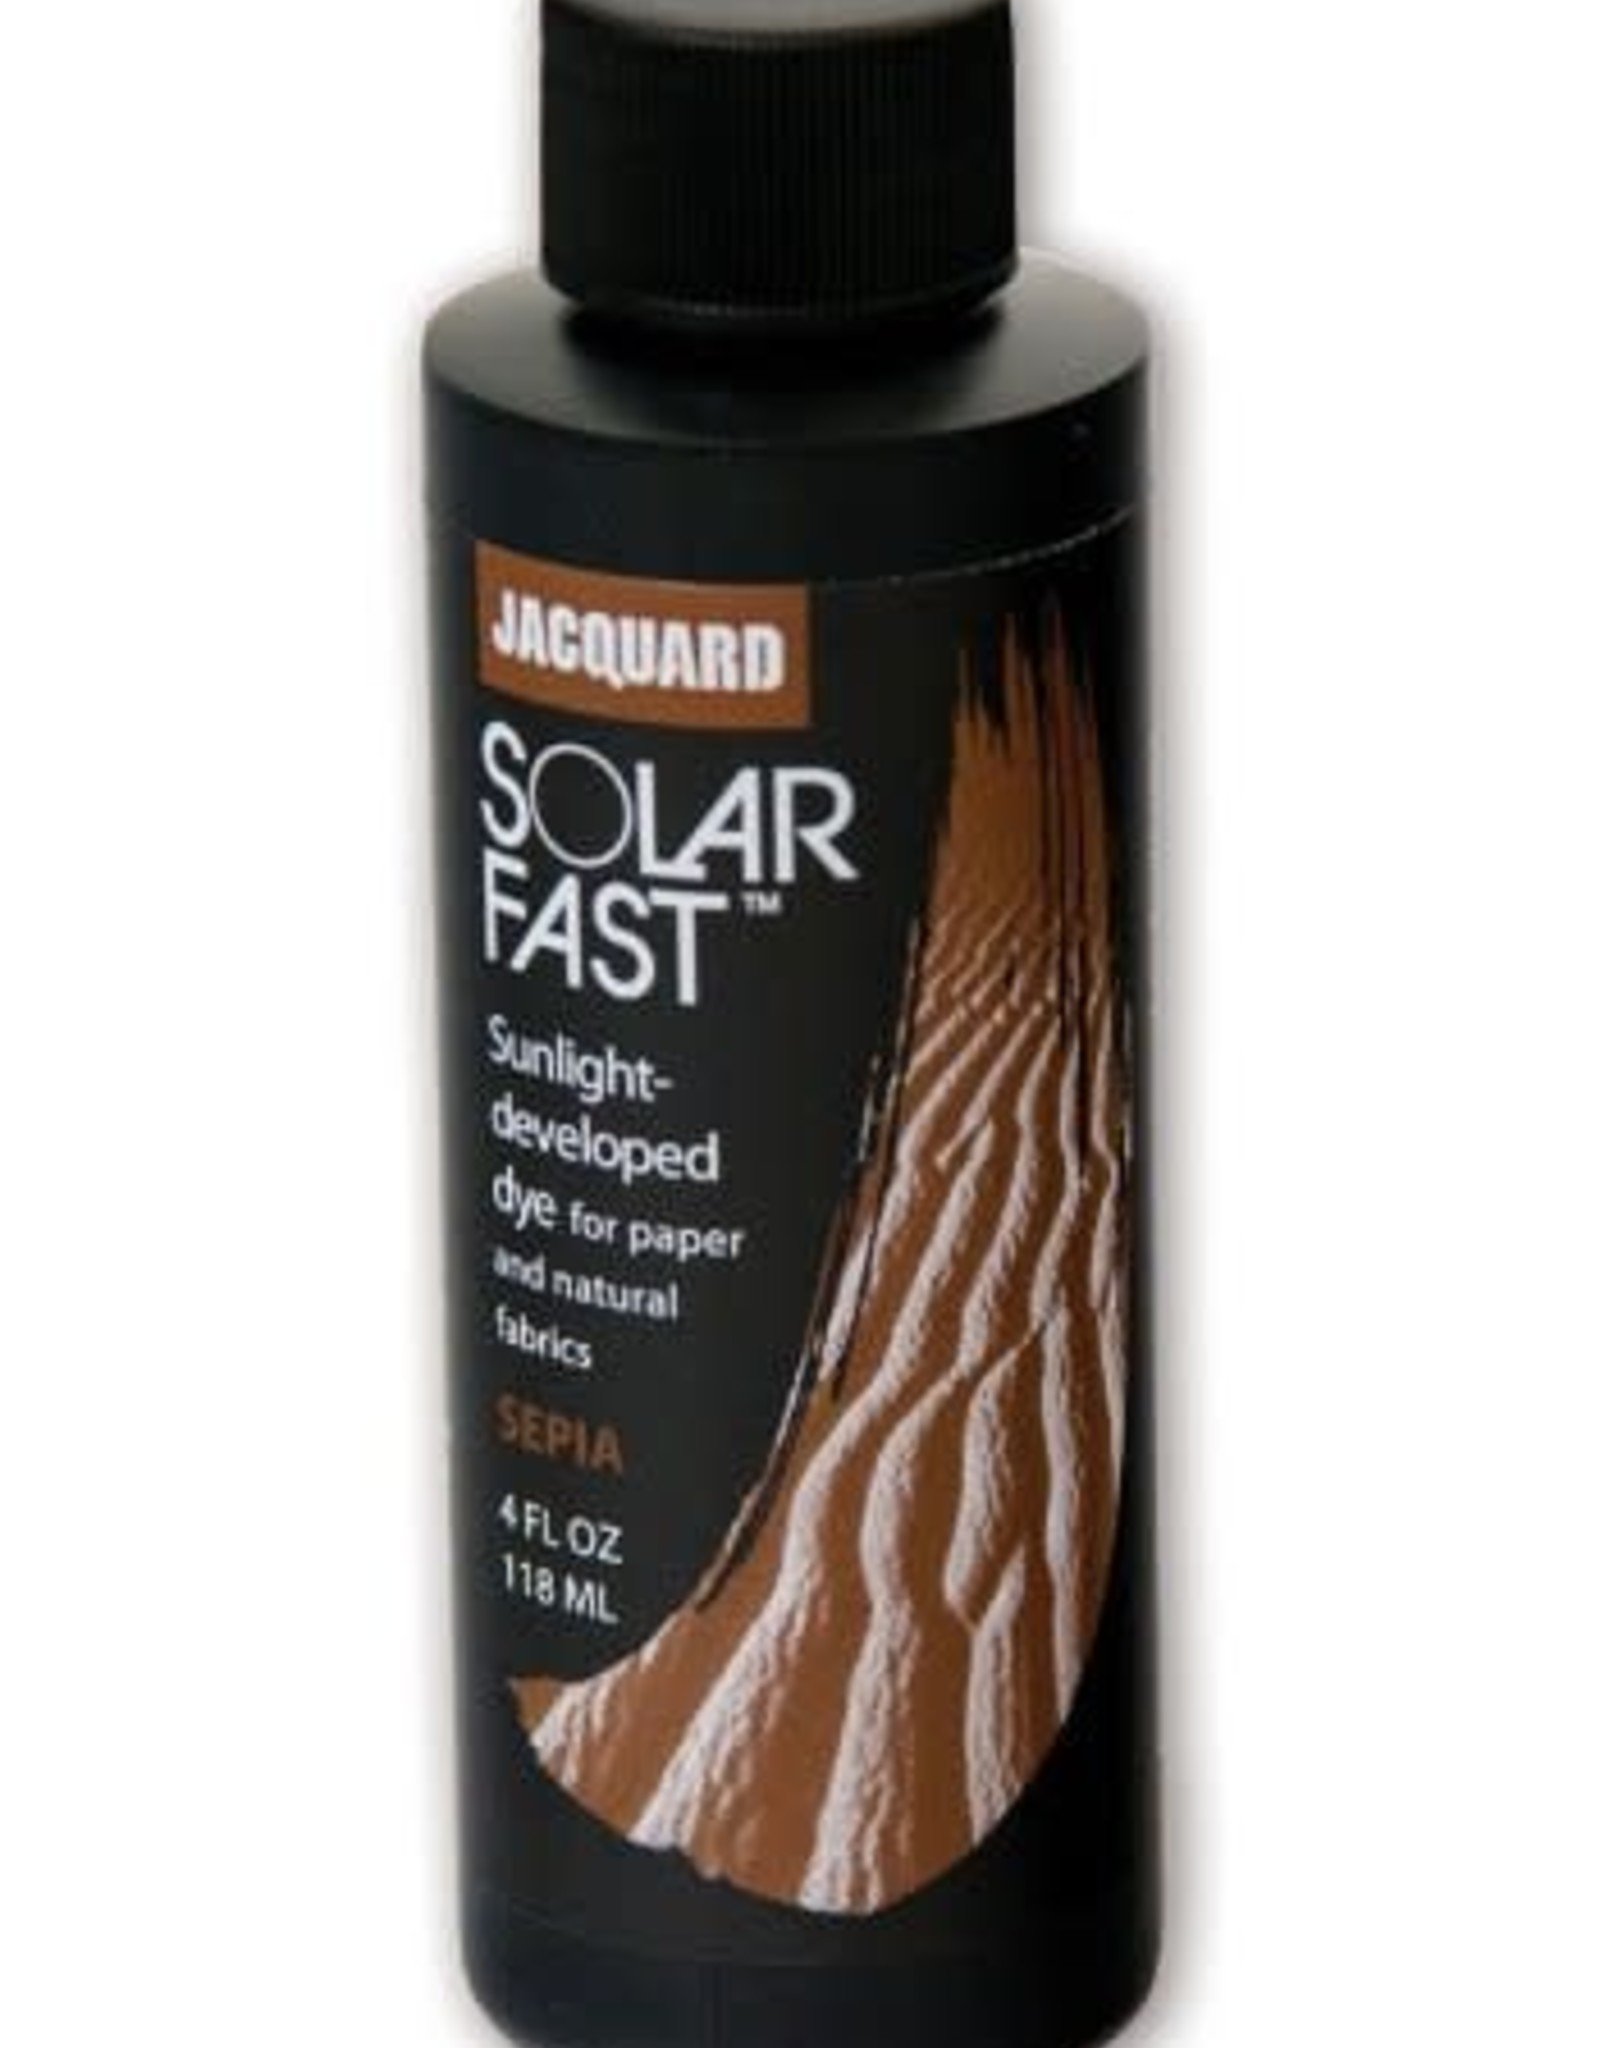 Jacquard SolarFast is dye that develops in sunlight!